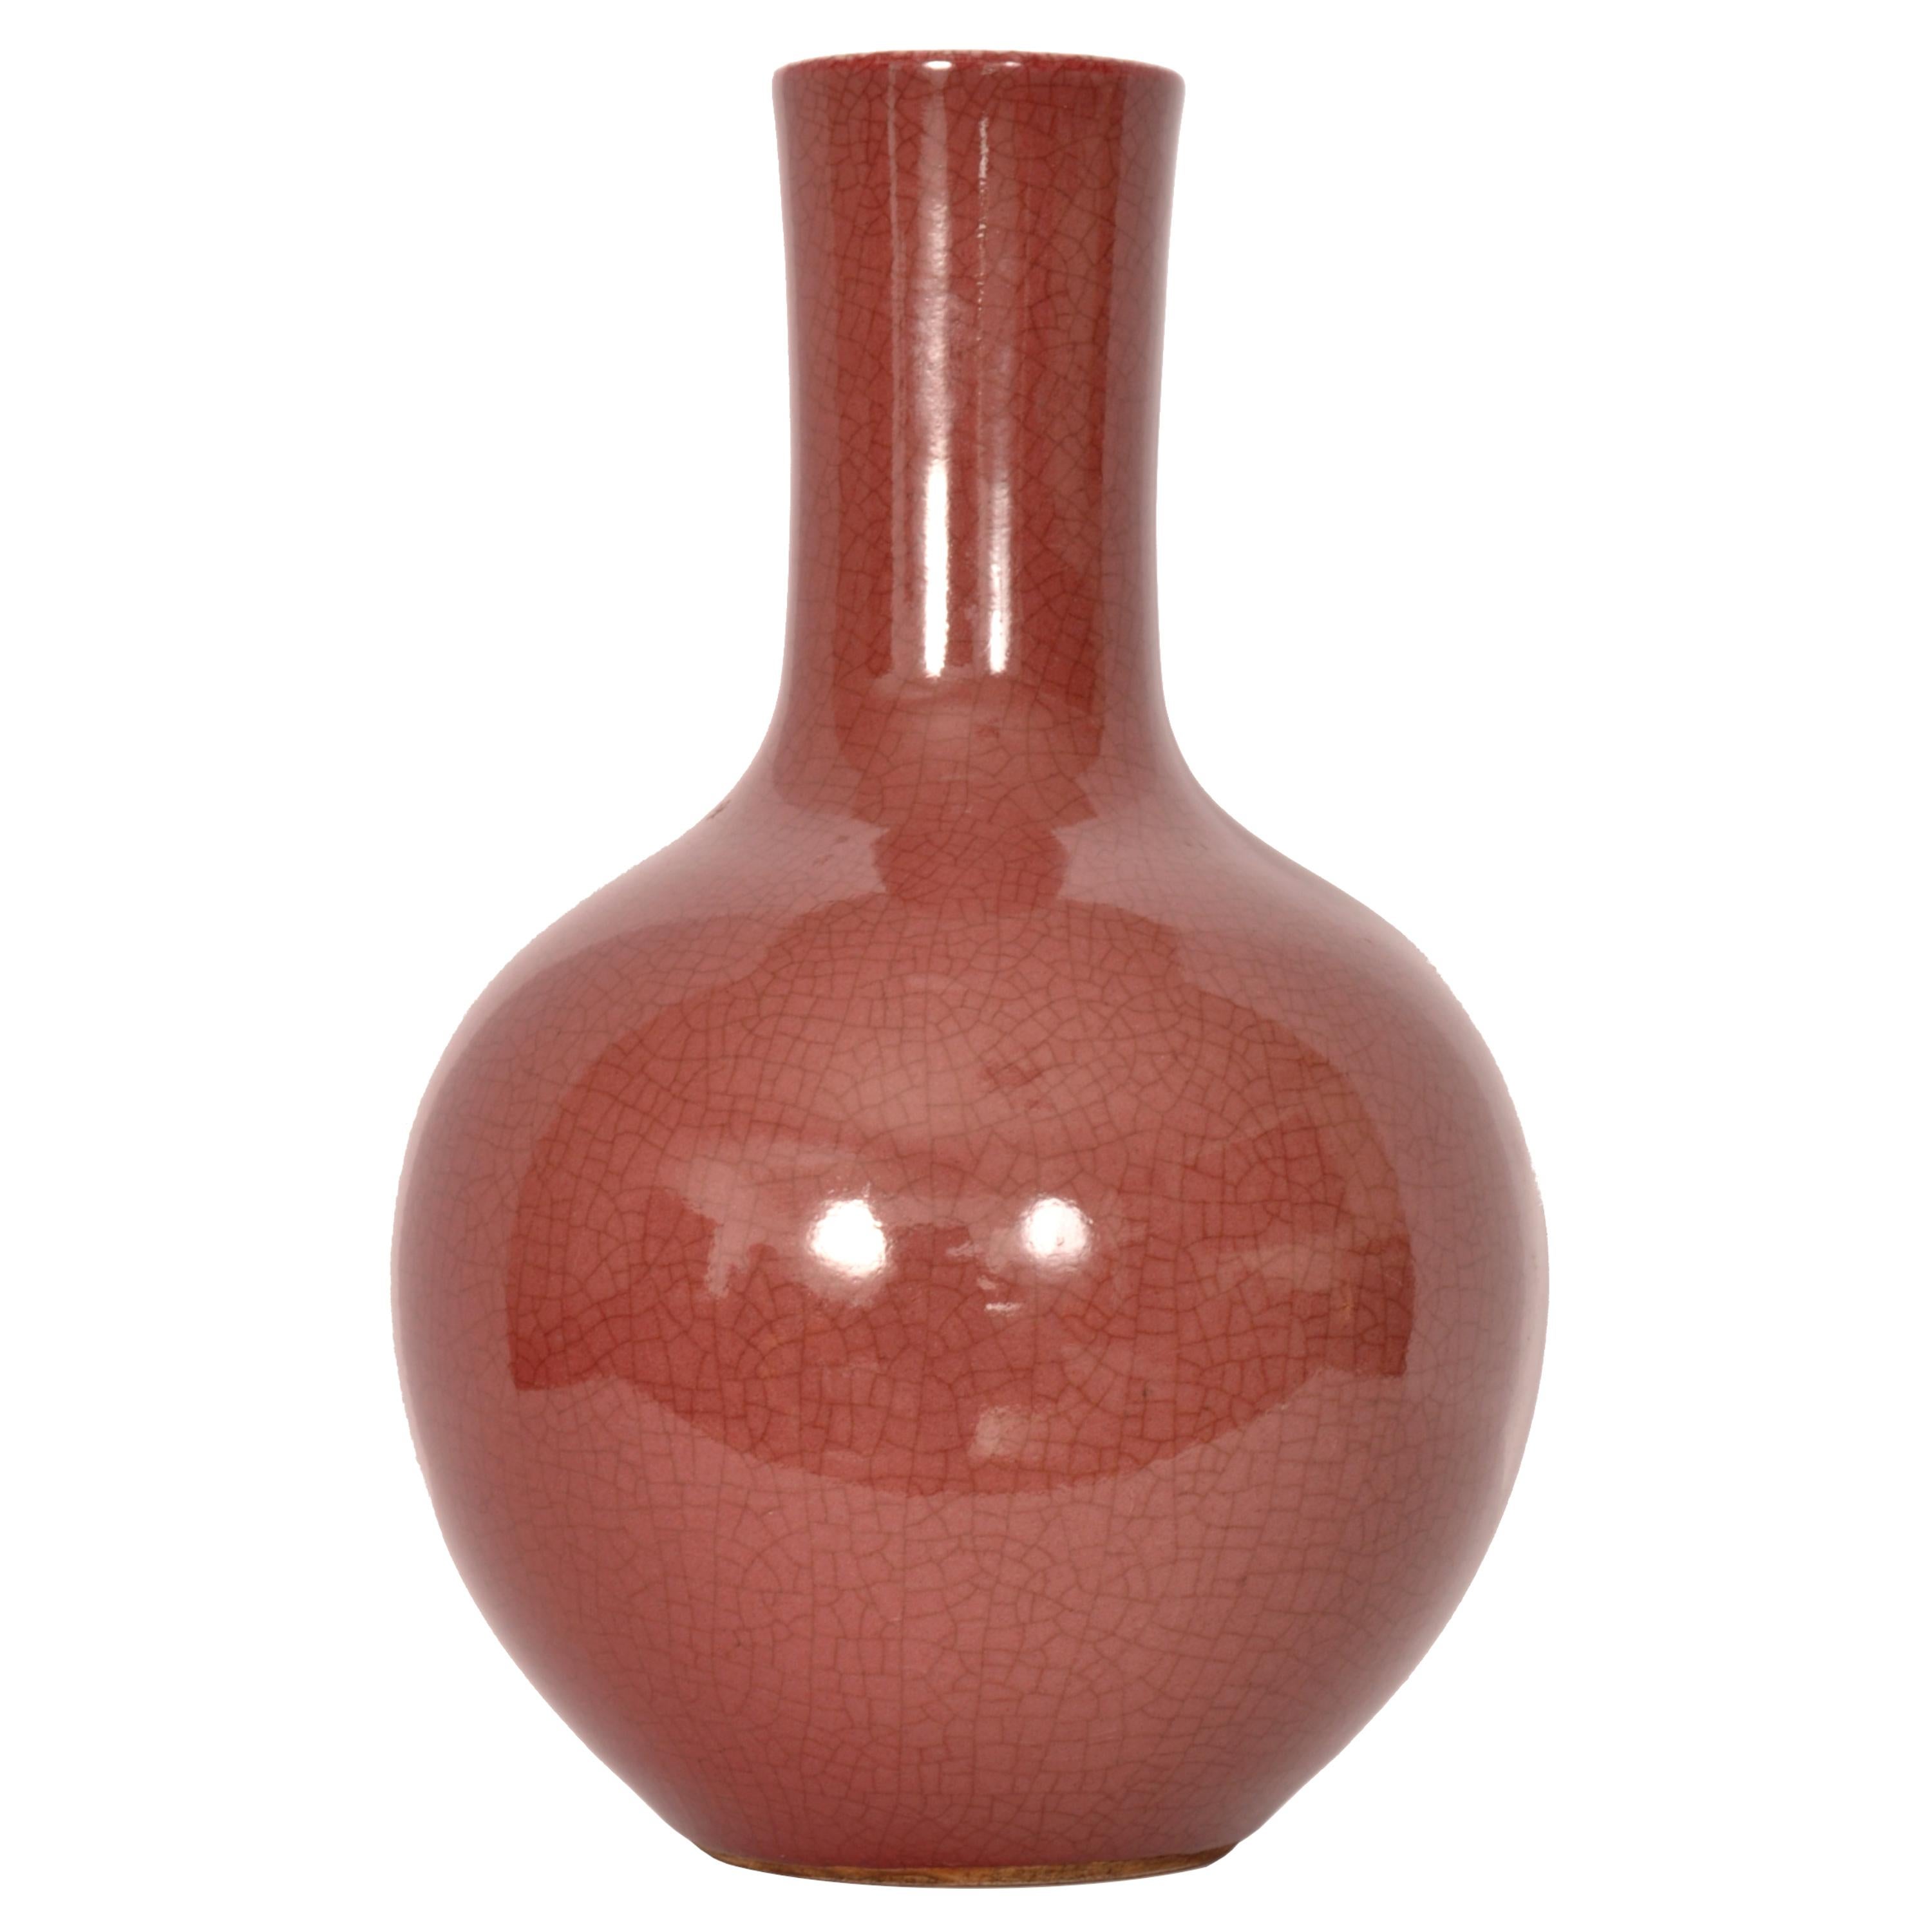 Antiquité chinoise du 19ème siècle Qing Vase à glaçure rouge Sang de Boeuf Oxblood Crackle Glaze 